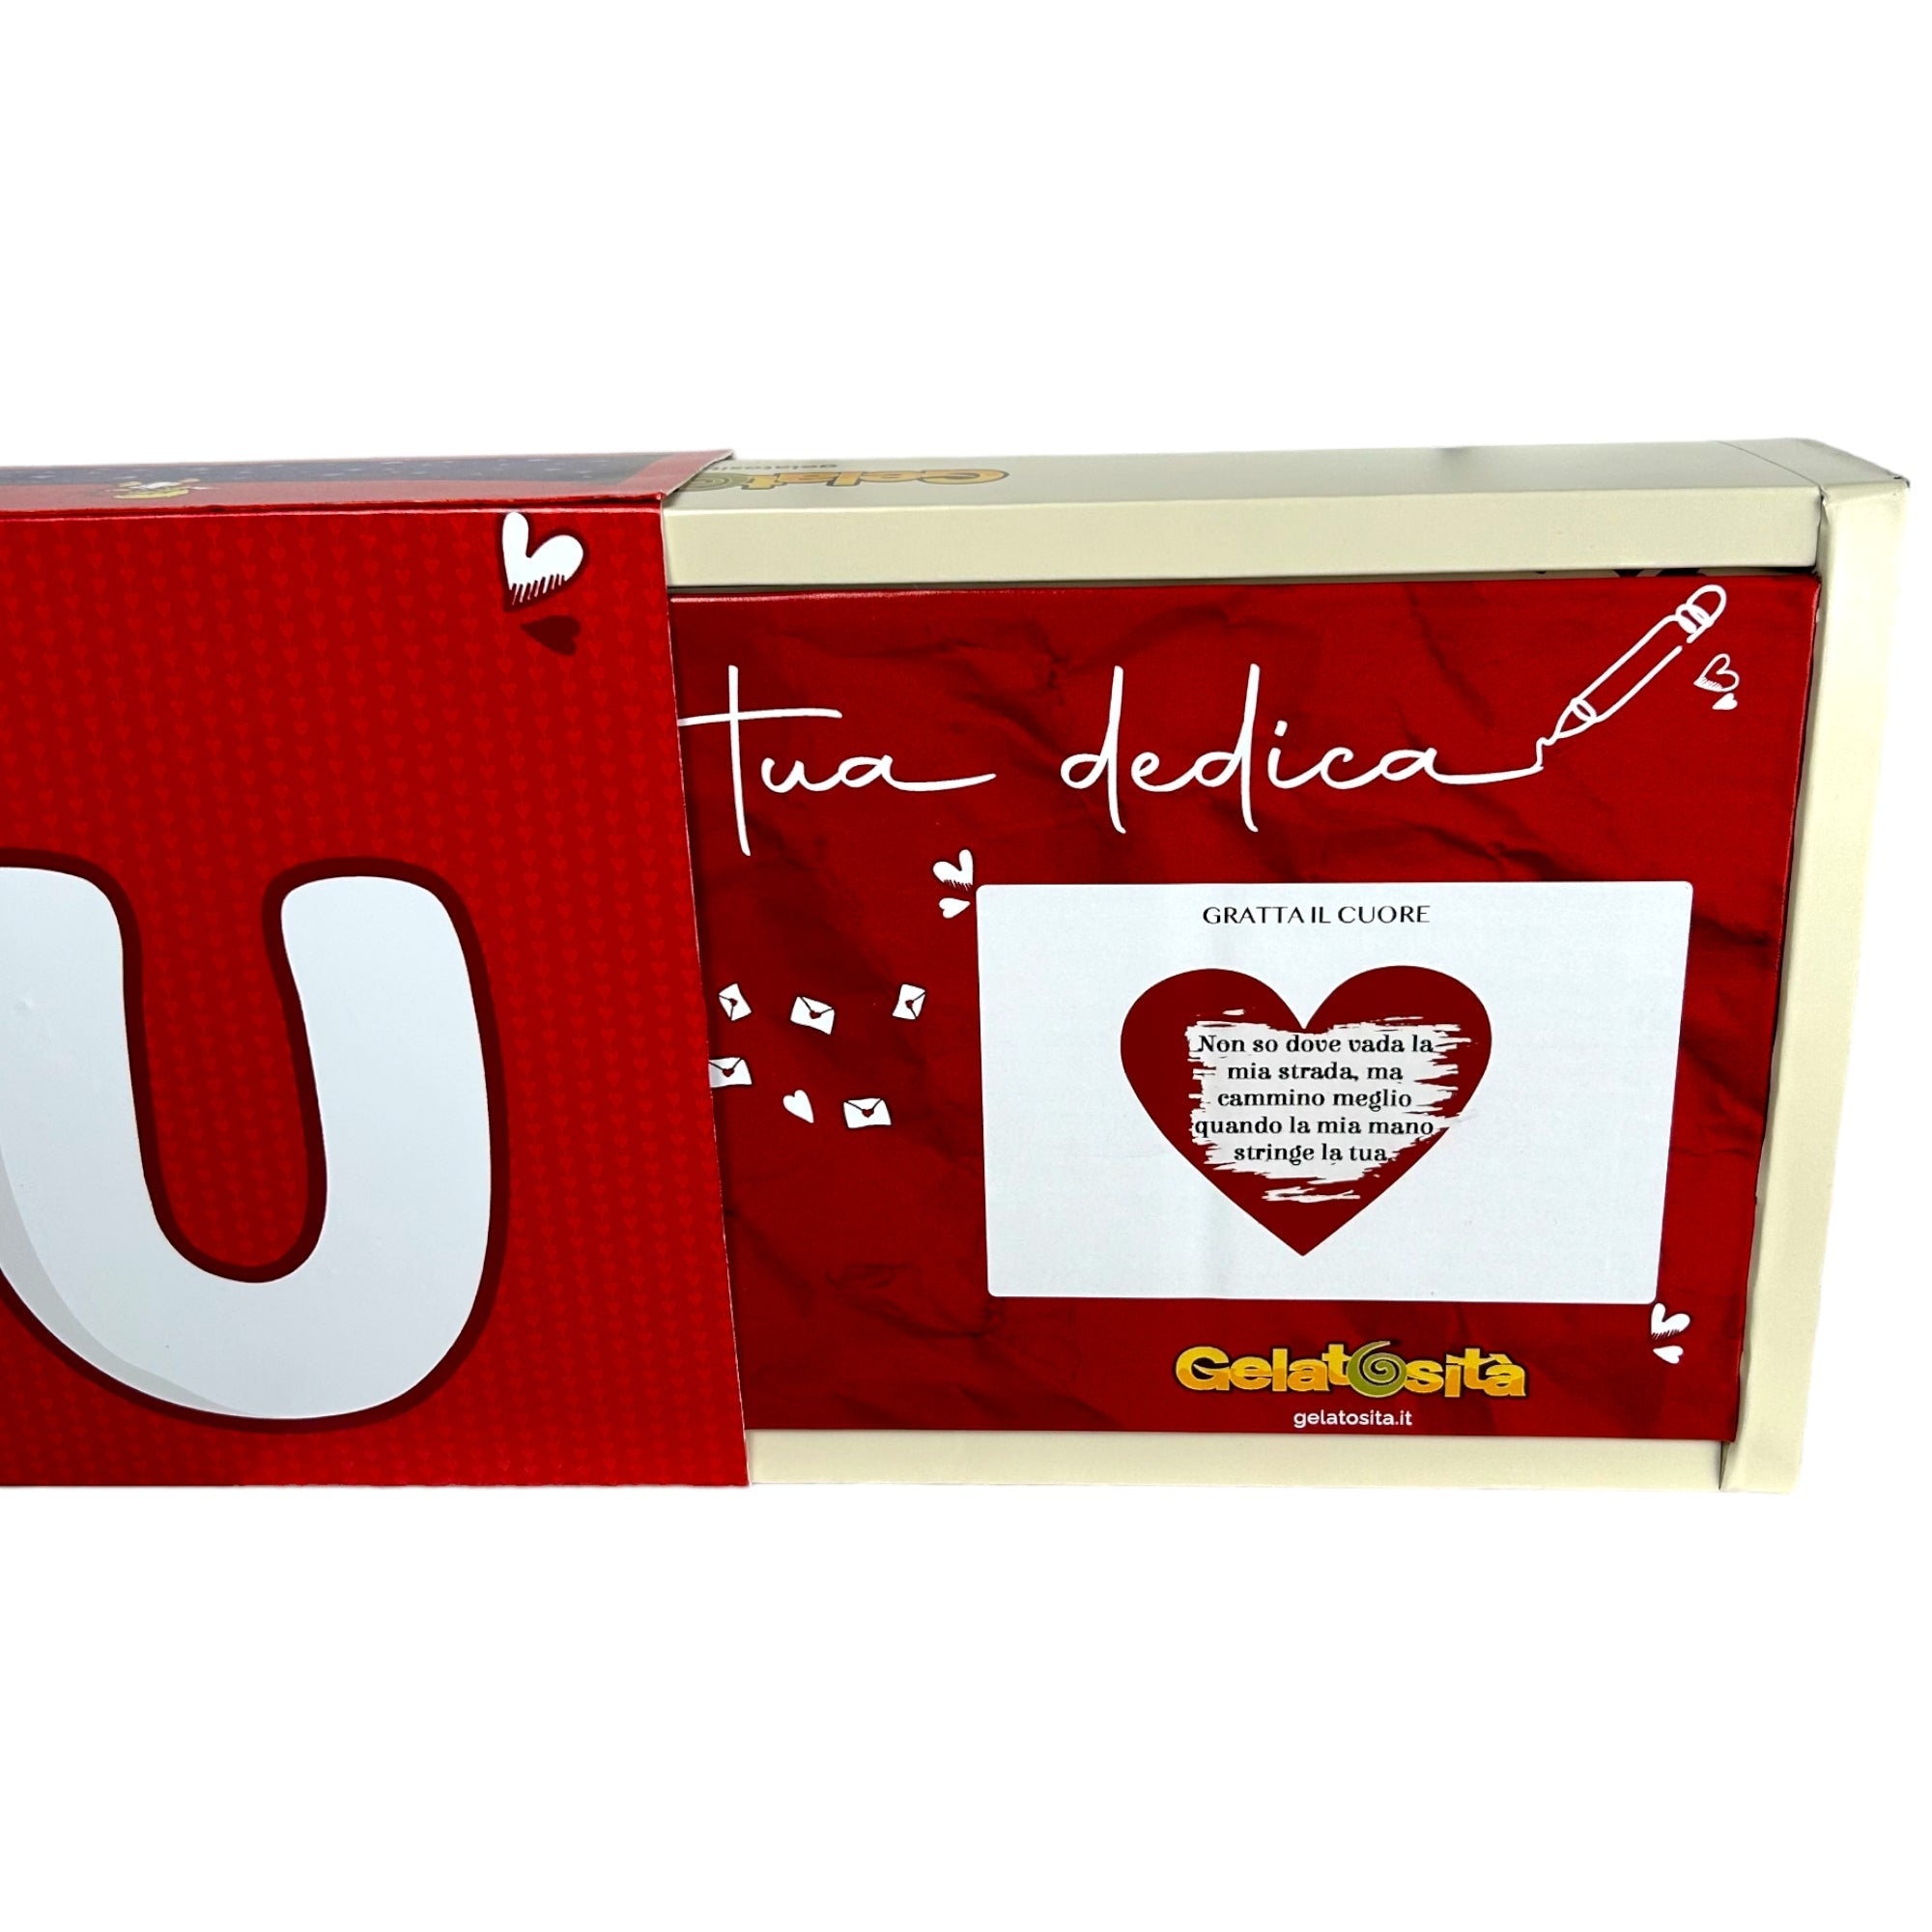 BOX MAMMA, I-LOVE-YOU! Cuore Fondente ripieno Crema Fondente + 5 creme + 2 cioccolatini + rosa e dedica (Ed. Limitata)